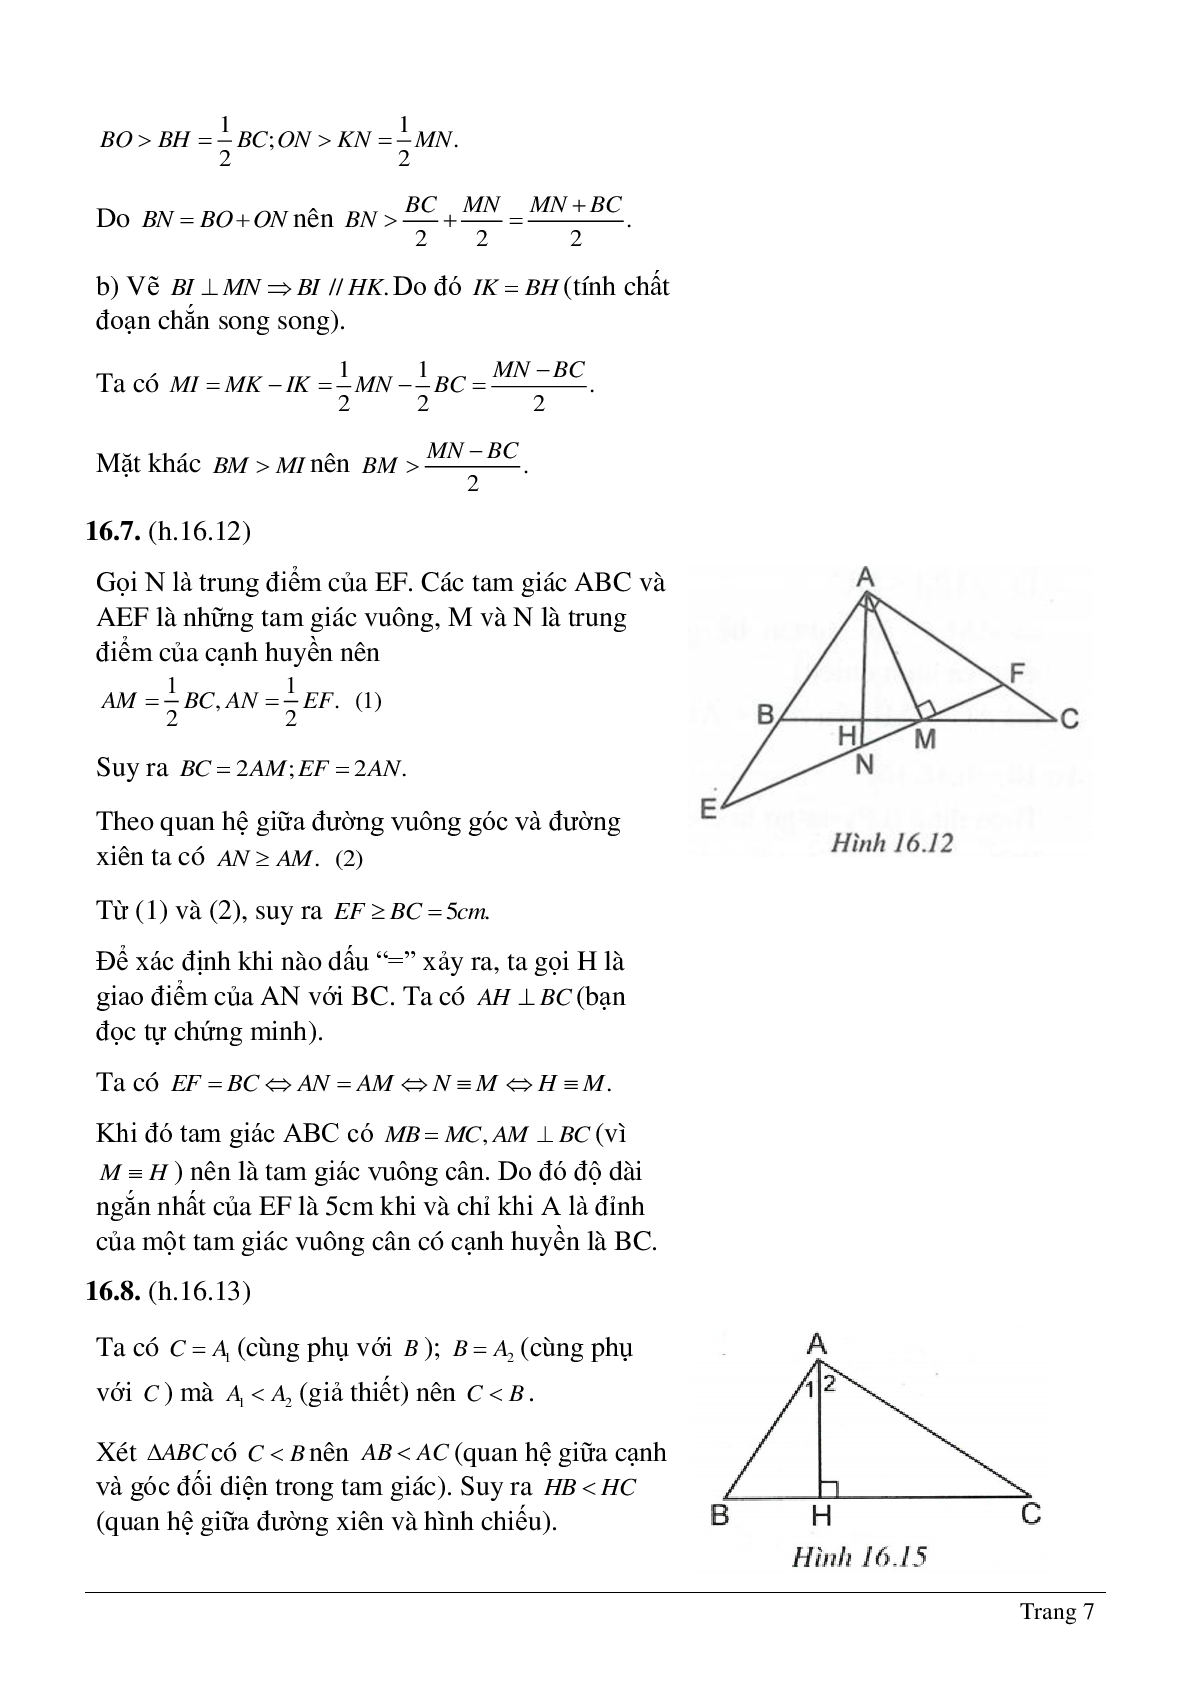 Tổng hợp kiến thức về Quan hệ giữa đường vuông góc và đường xiên, đường xiên và hình chiếu của đường xiên chọn lọc (trang 7)